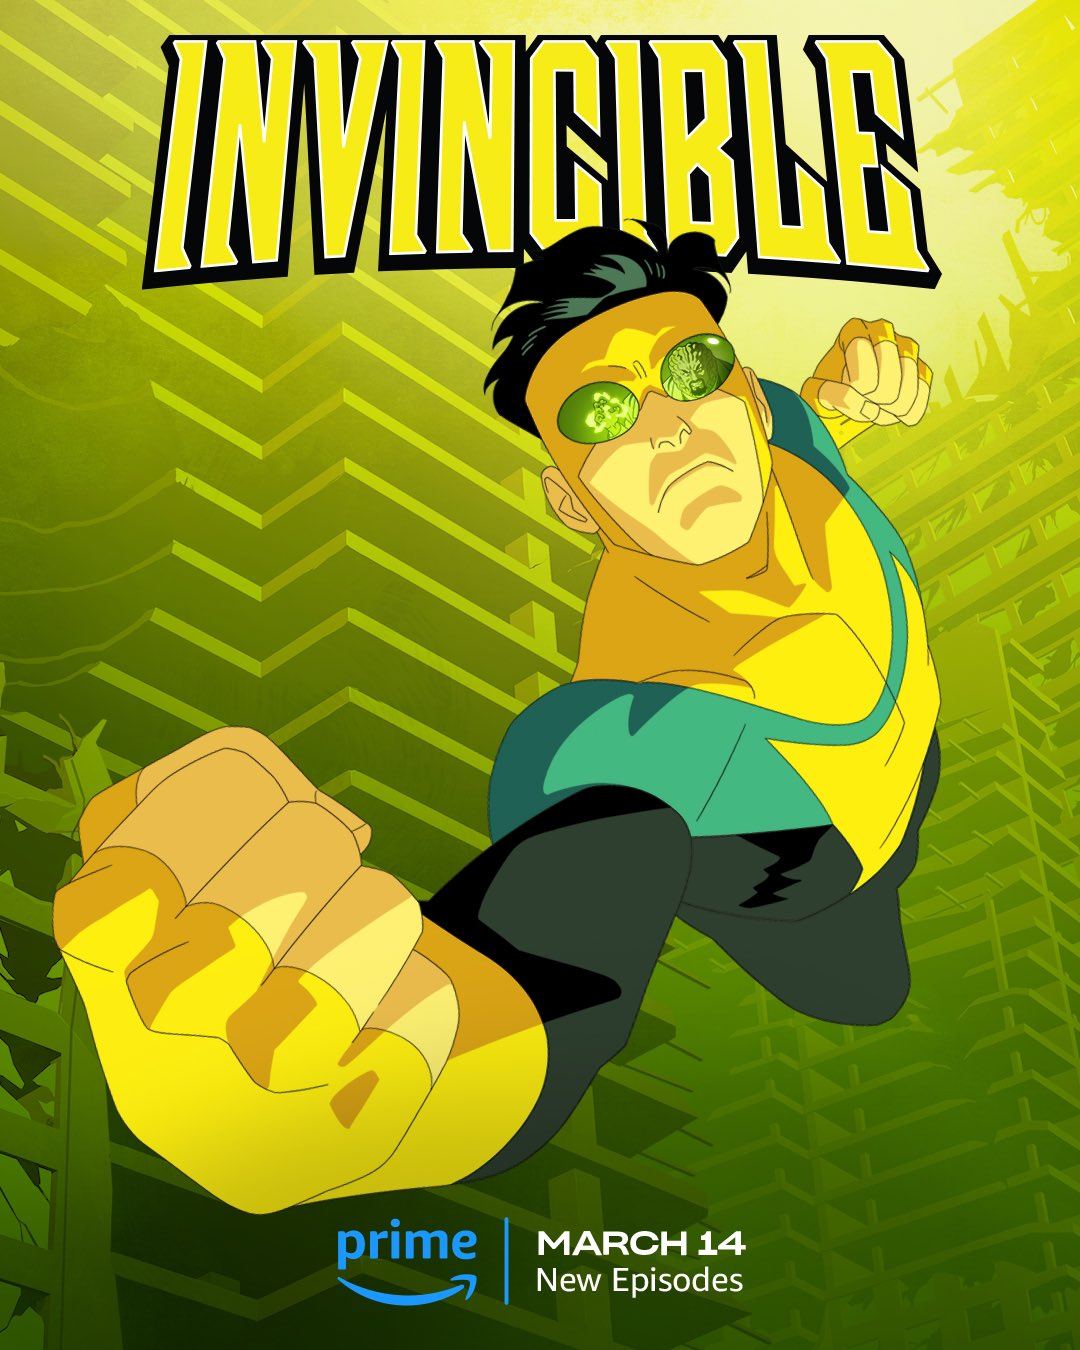 Постер второй части второго сезона «Непобедимого» намекает на возвращение супергеройского сериала Prime Video